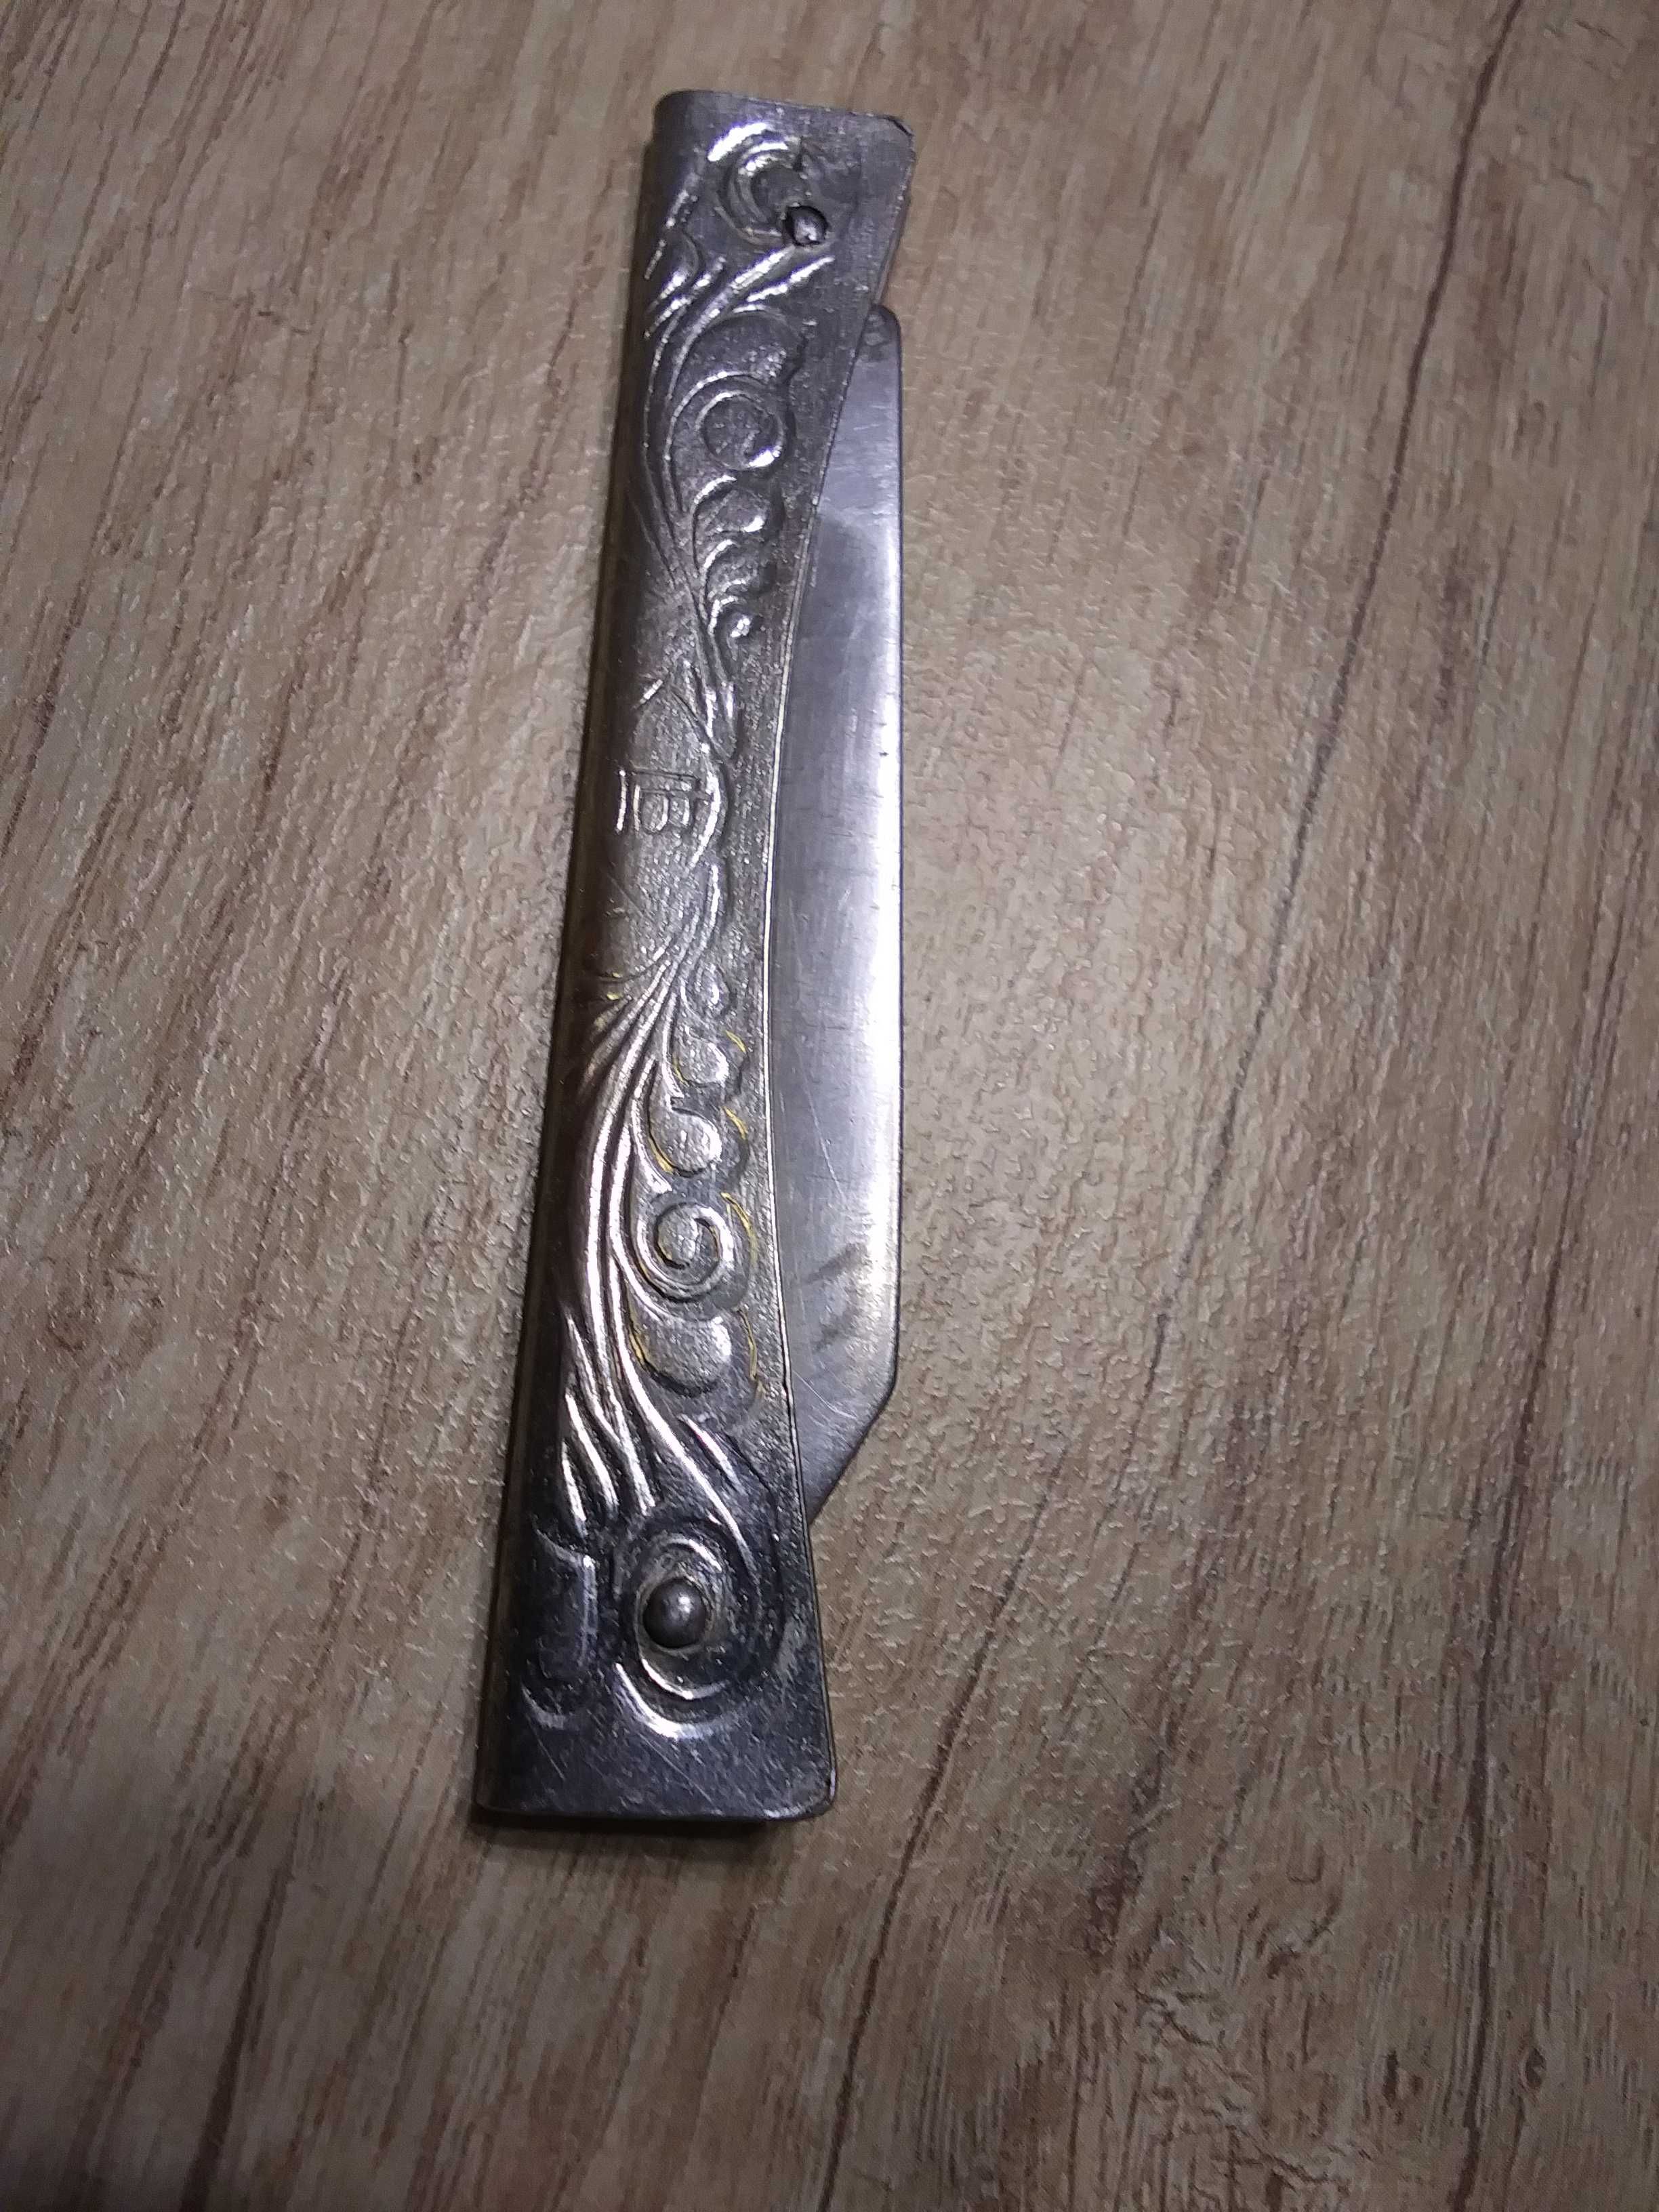 Stary scyzoryk kieszonkowy składany nóż nożyk metalowy CCCP ZSRR PRL